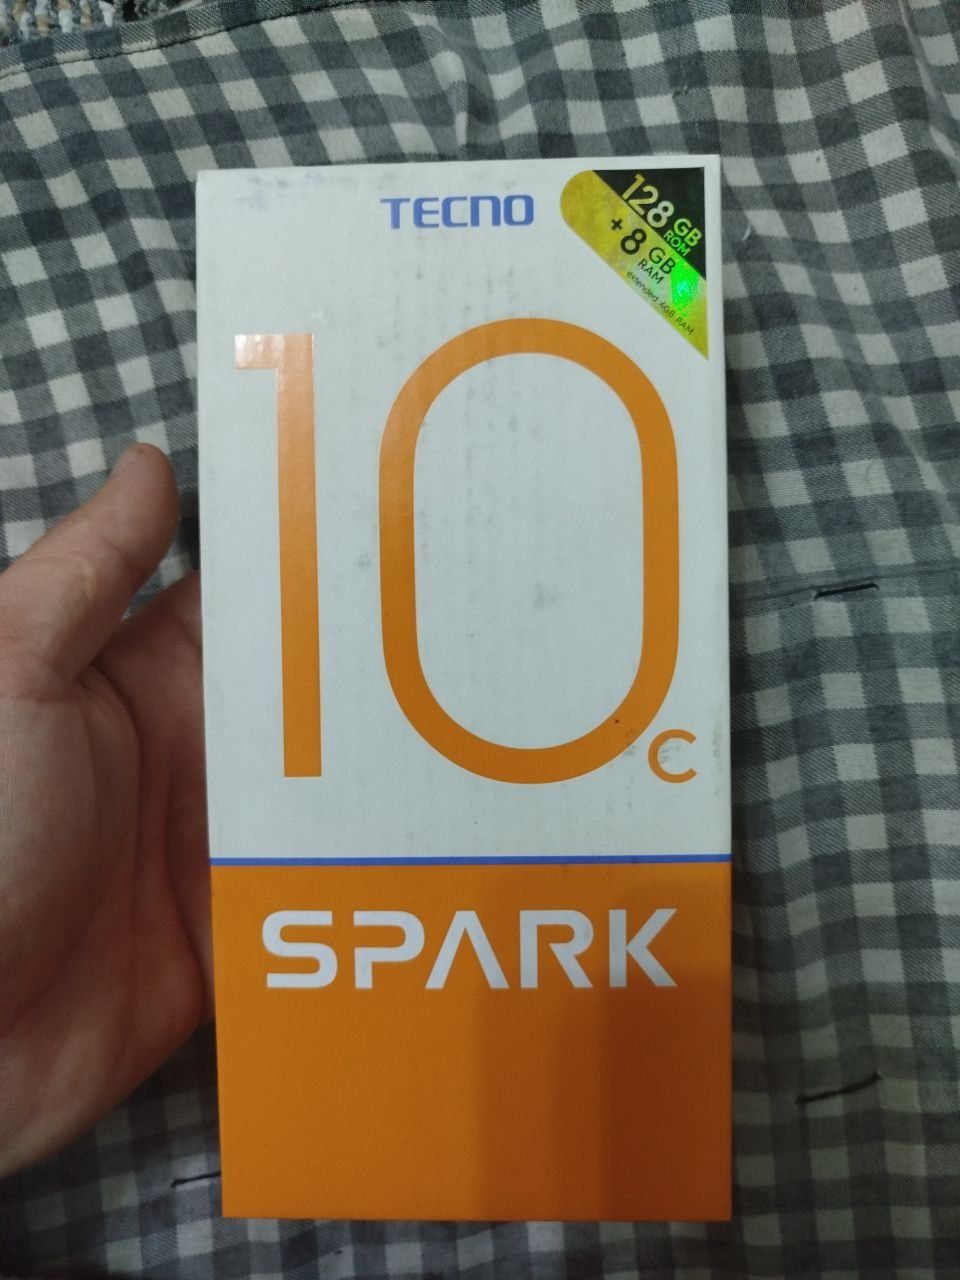 Spark 10 C yangi karopka